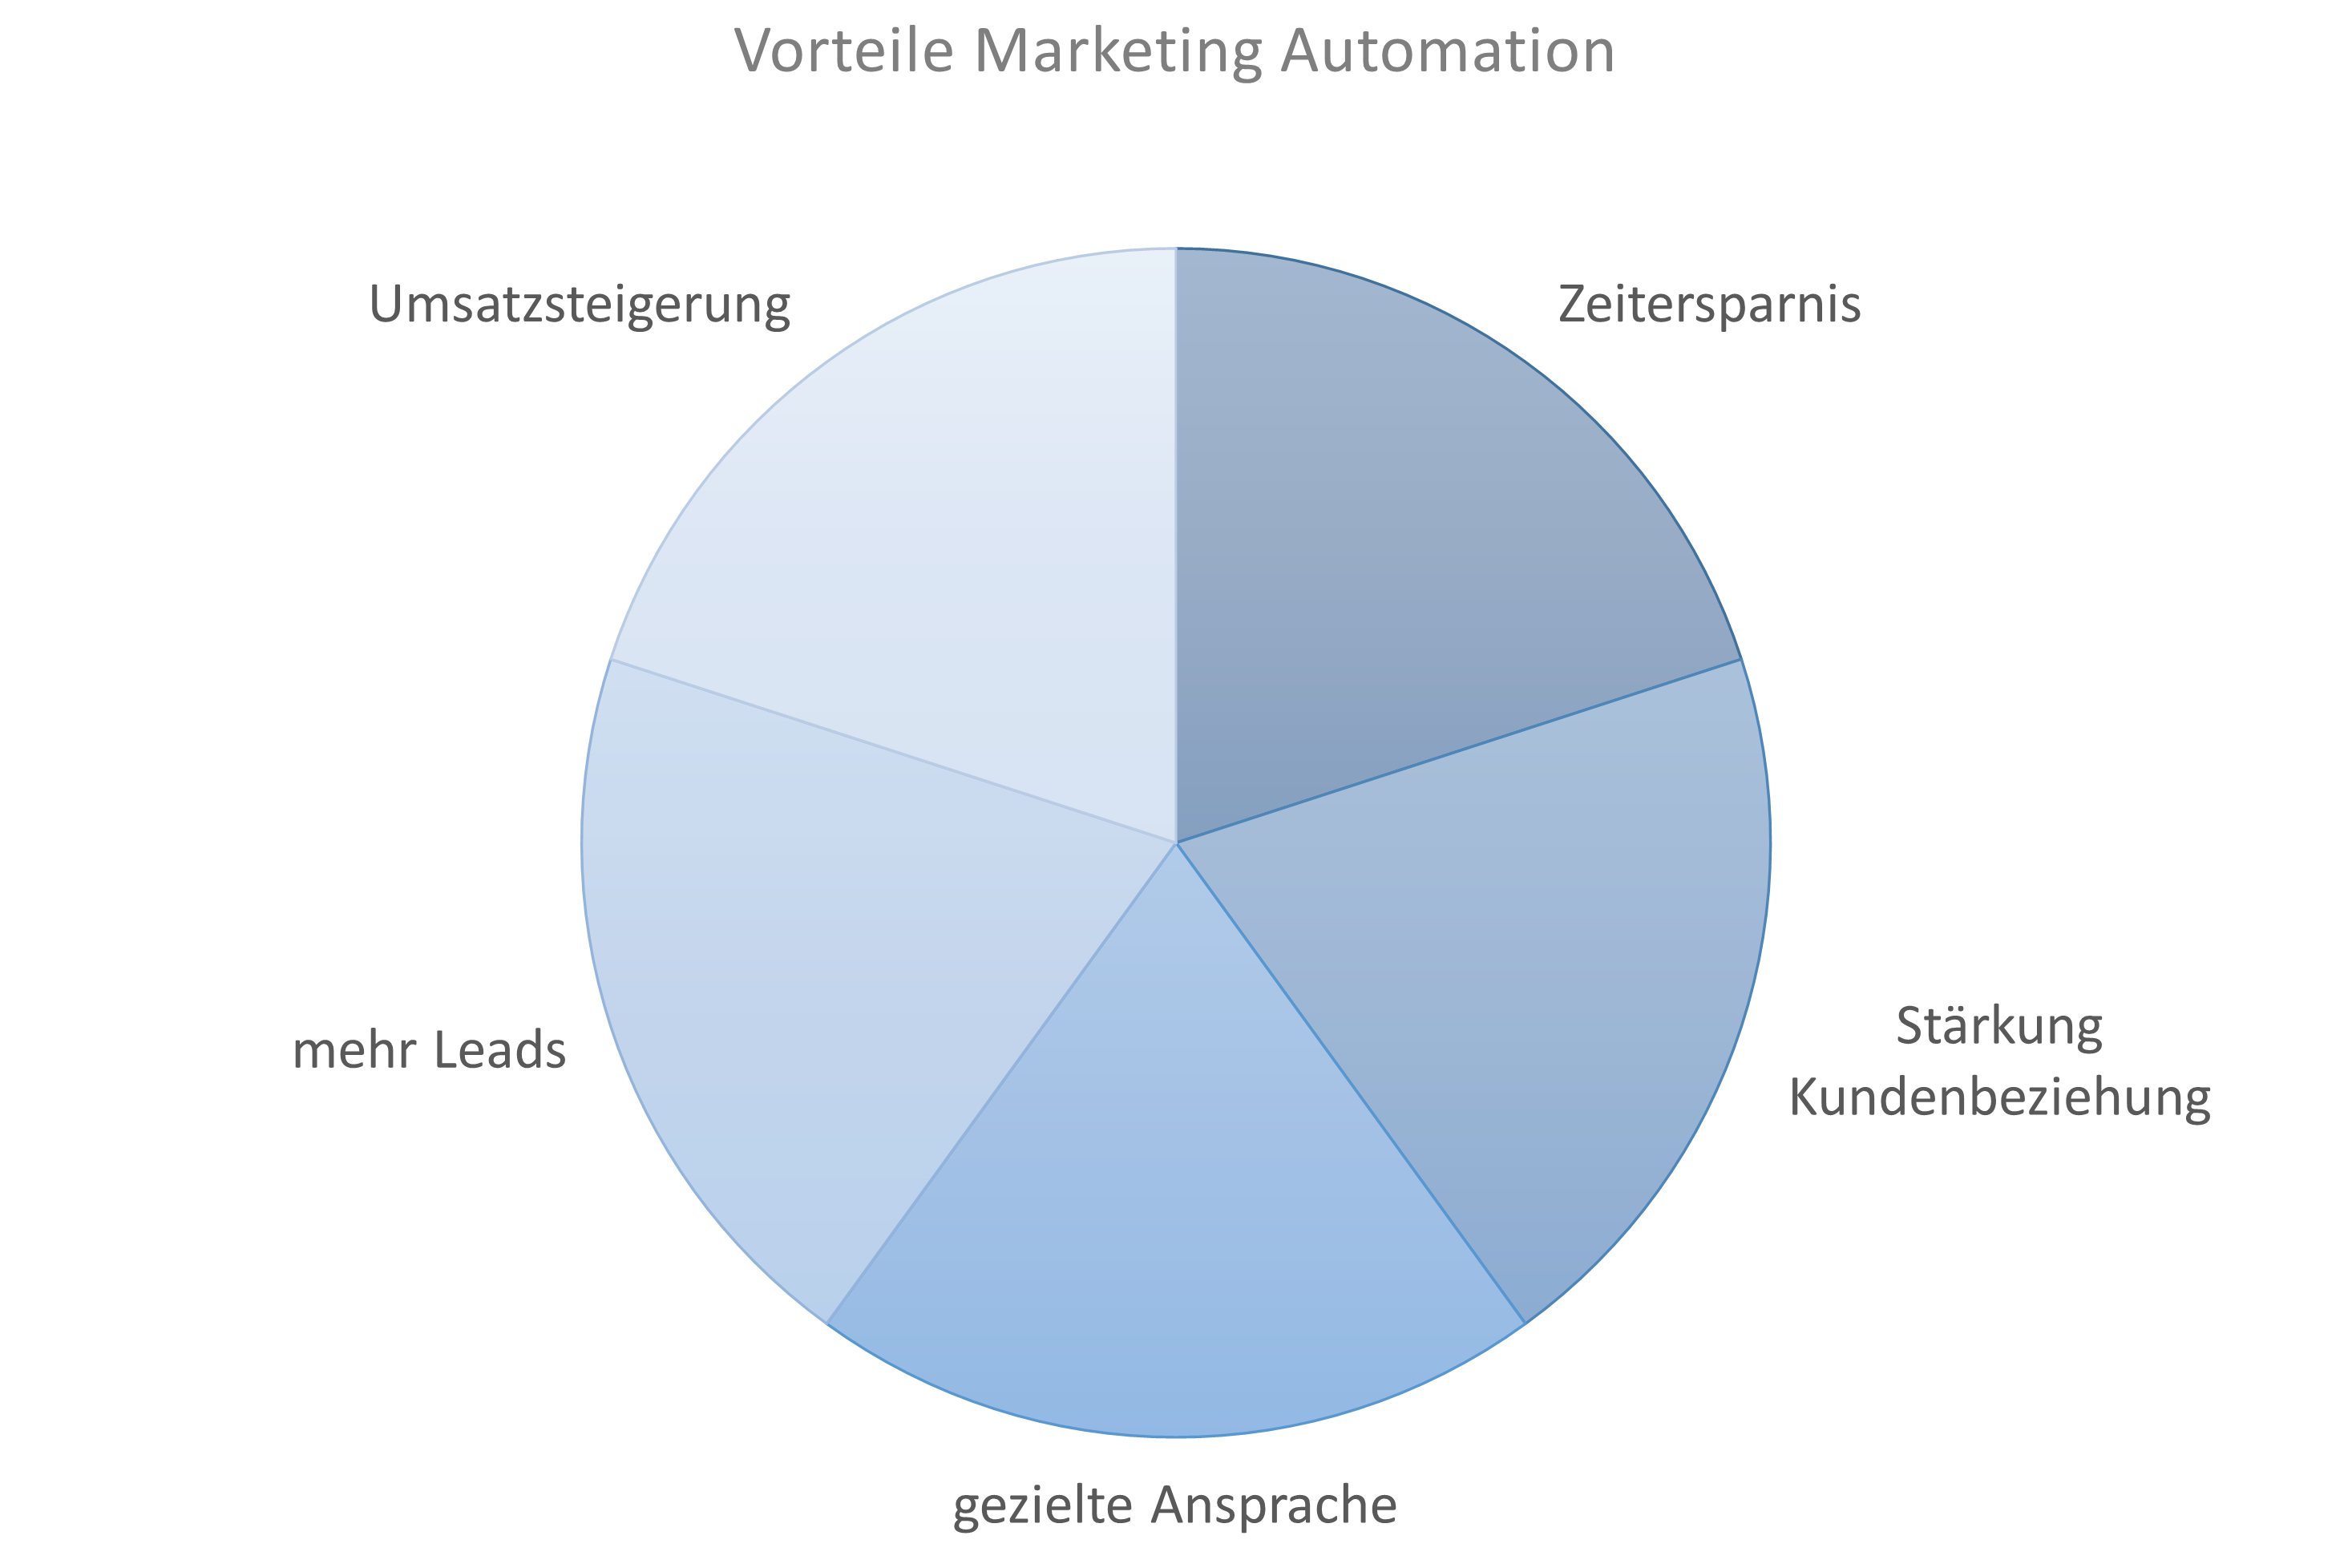 Ein Kreisdiagramm zeigt die Vorteile von Marketing Automation: Zeitersparnis, Stärkung Kundenbeziehung, gezielte Ansprache, mehr Leads, Umsatzsteigerung.